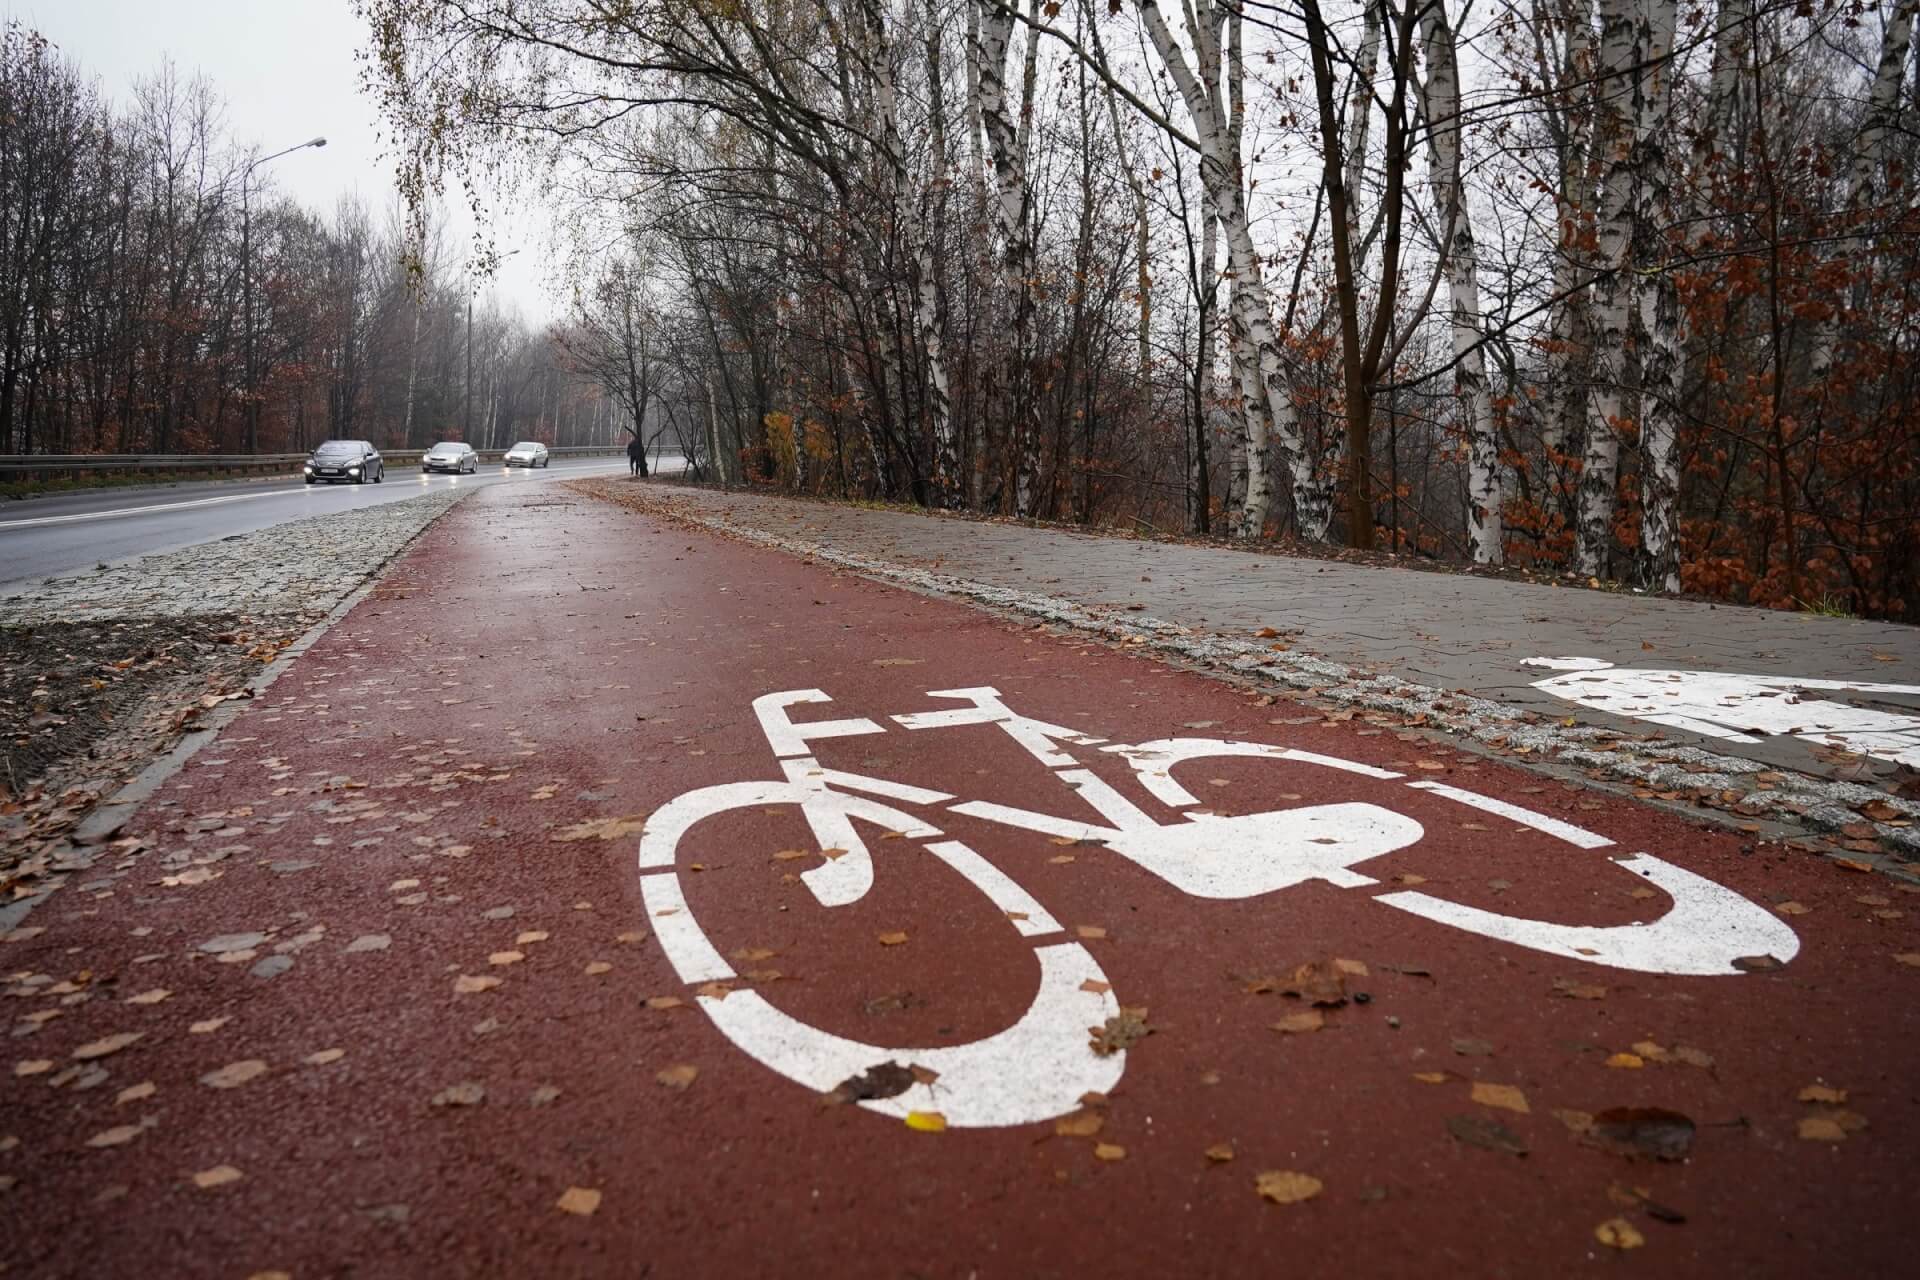 Droga dla rowerów wzdłuż Szopienickiej